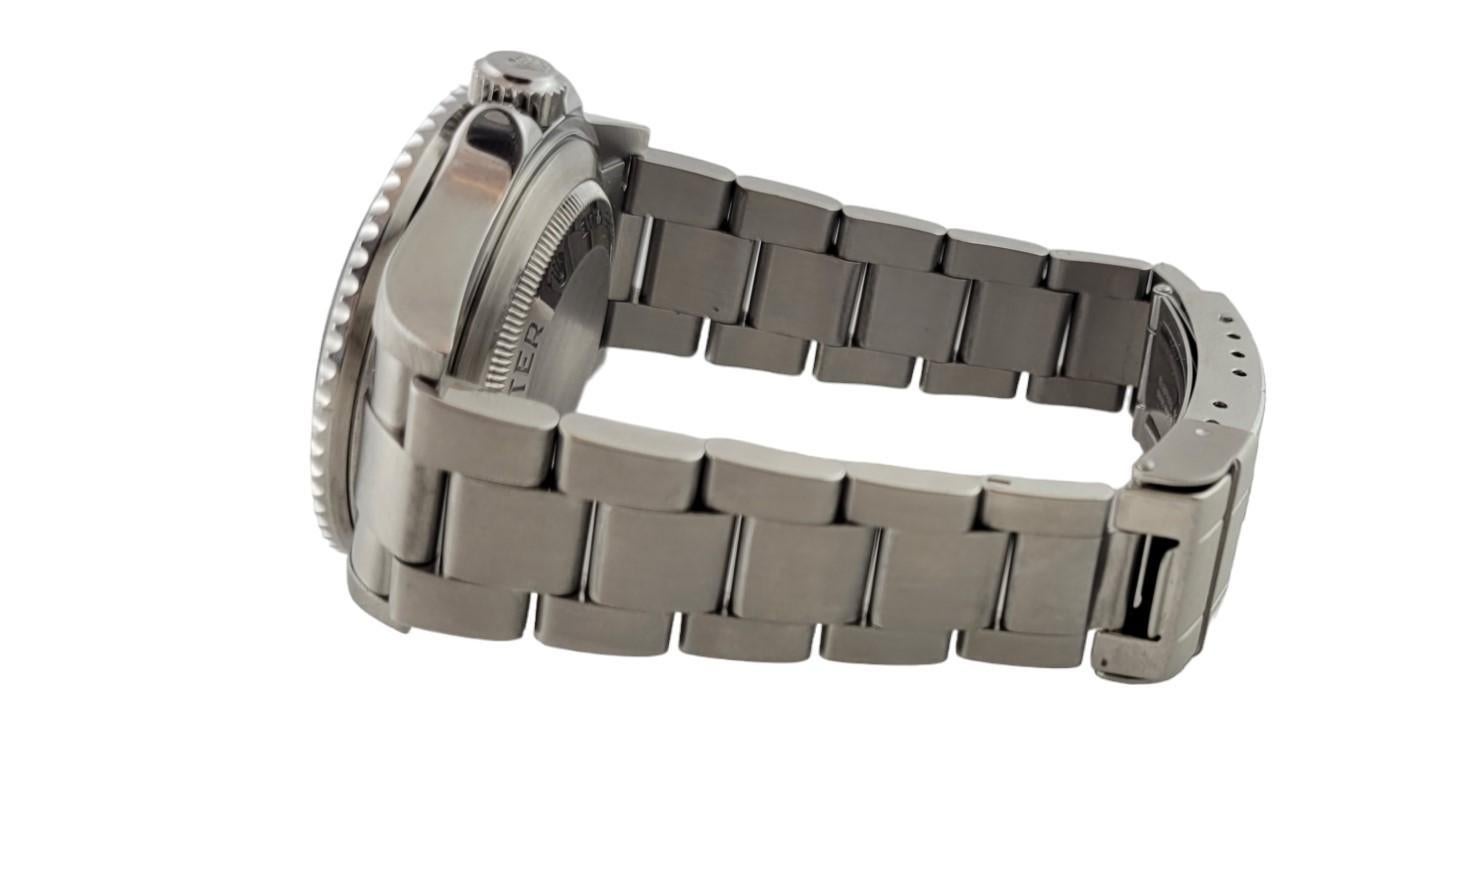 2004 Montre Rolex Sea-Dweller pour hommes

Modèle : 16600
Série : F621883

Boîtier et bracelet en acier inoxydable

Le bracelet est bien serré, sans rayures ni bosses, et s'adapte à un poignet d'une taille allant jusqu'à 7 1/2